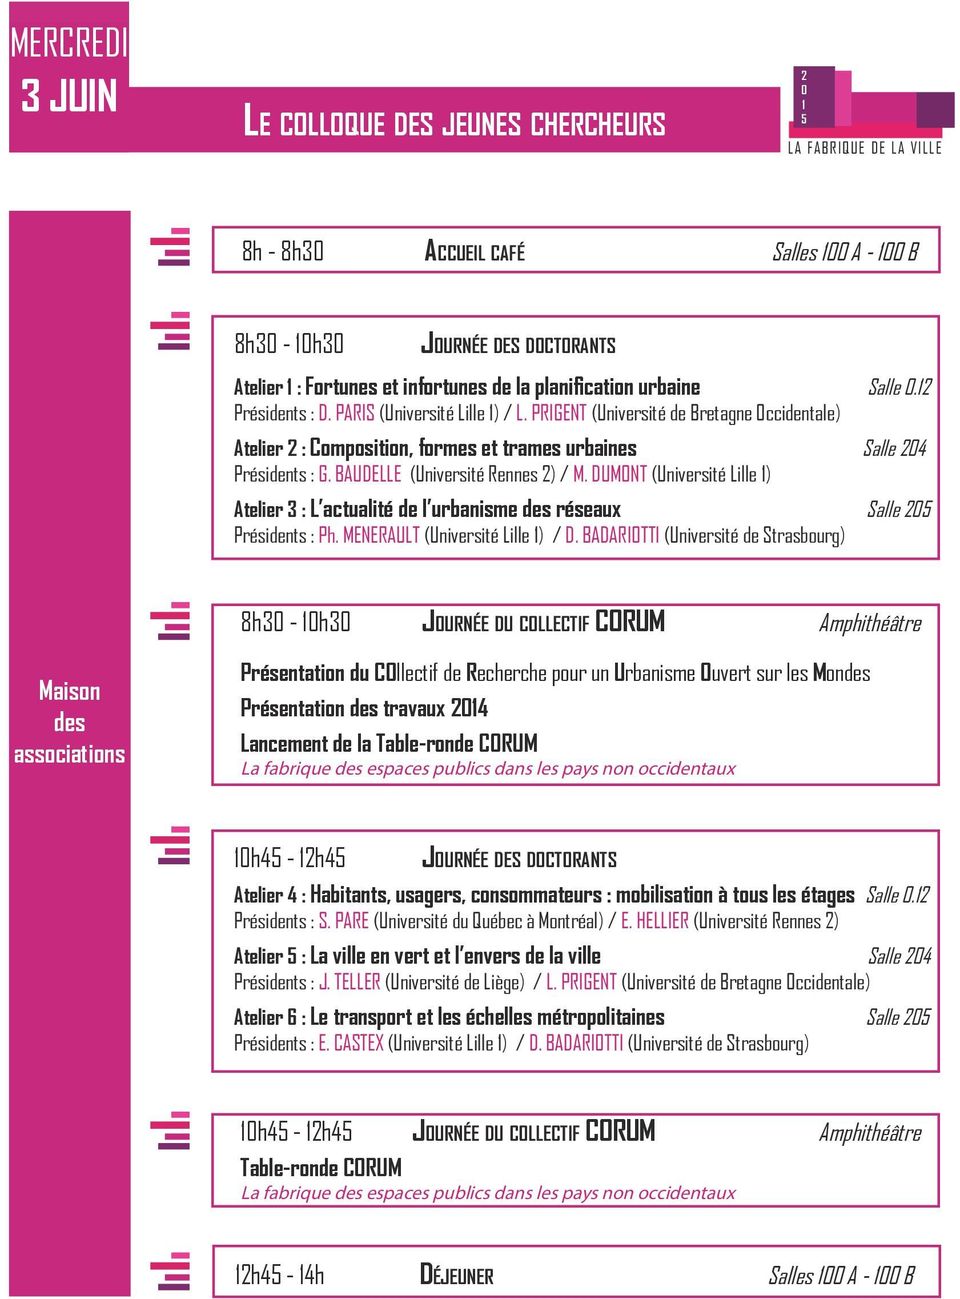 DUMONT (Université Lille ) Atelier 3 : L actualité de l urbanisme des réseaux Salle Présidents : Ph. MENERAULT (Université Lille ) / D.